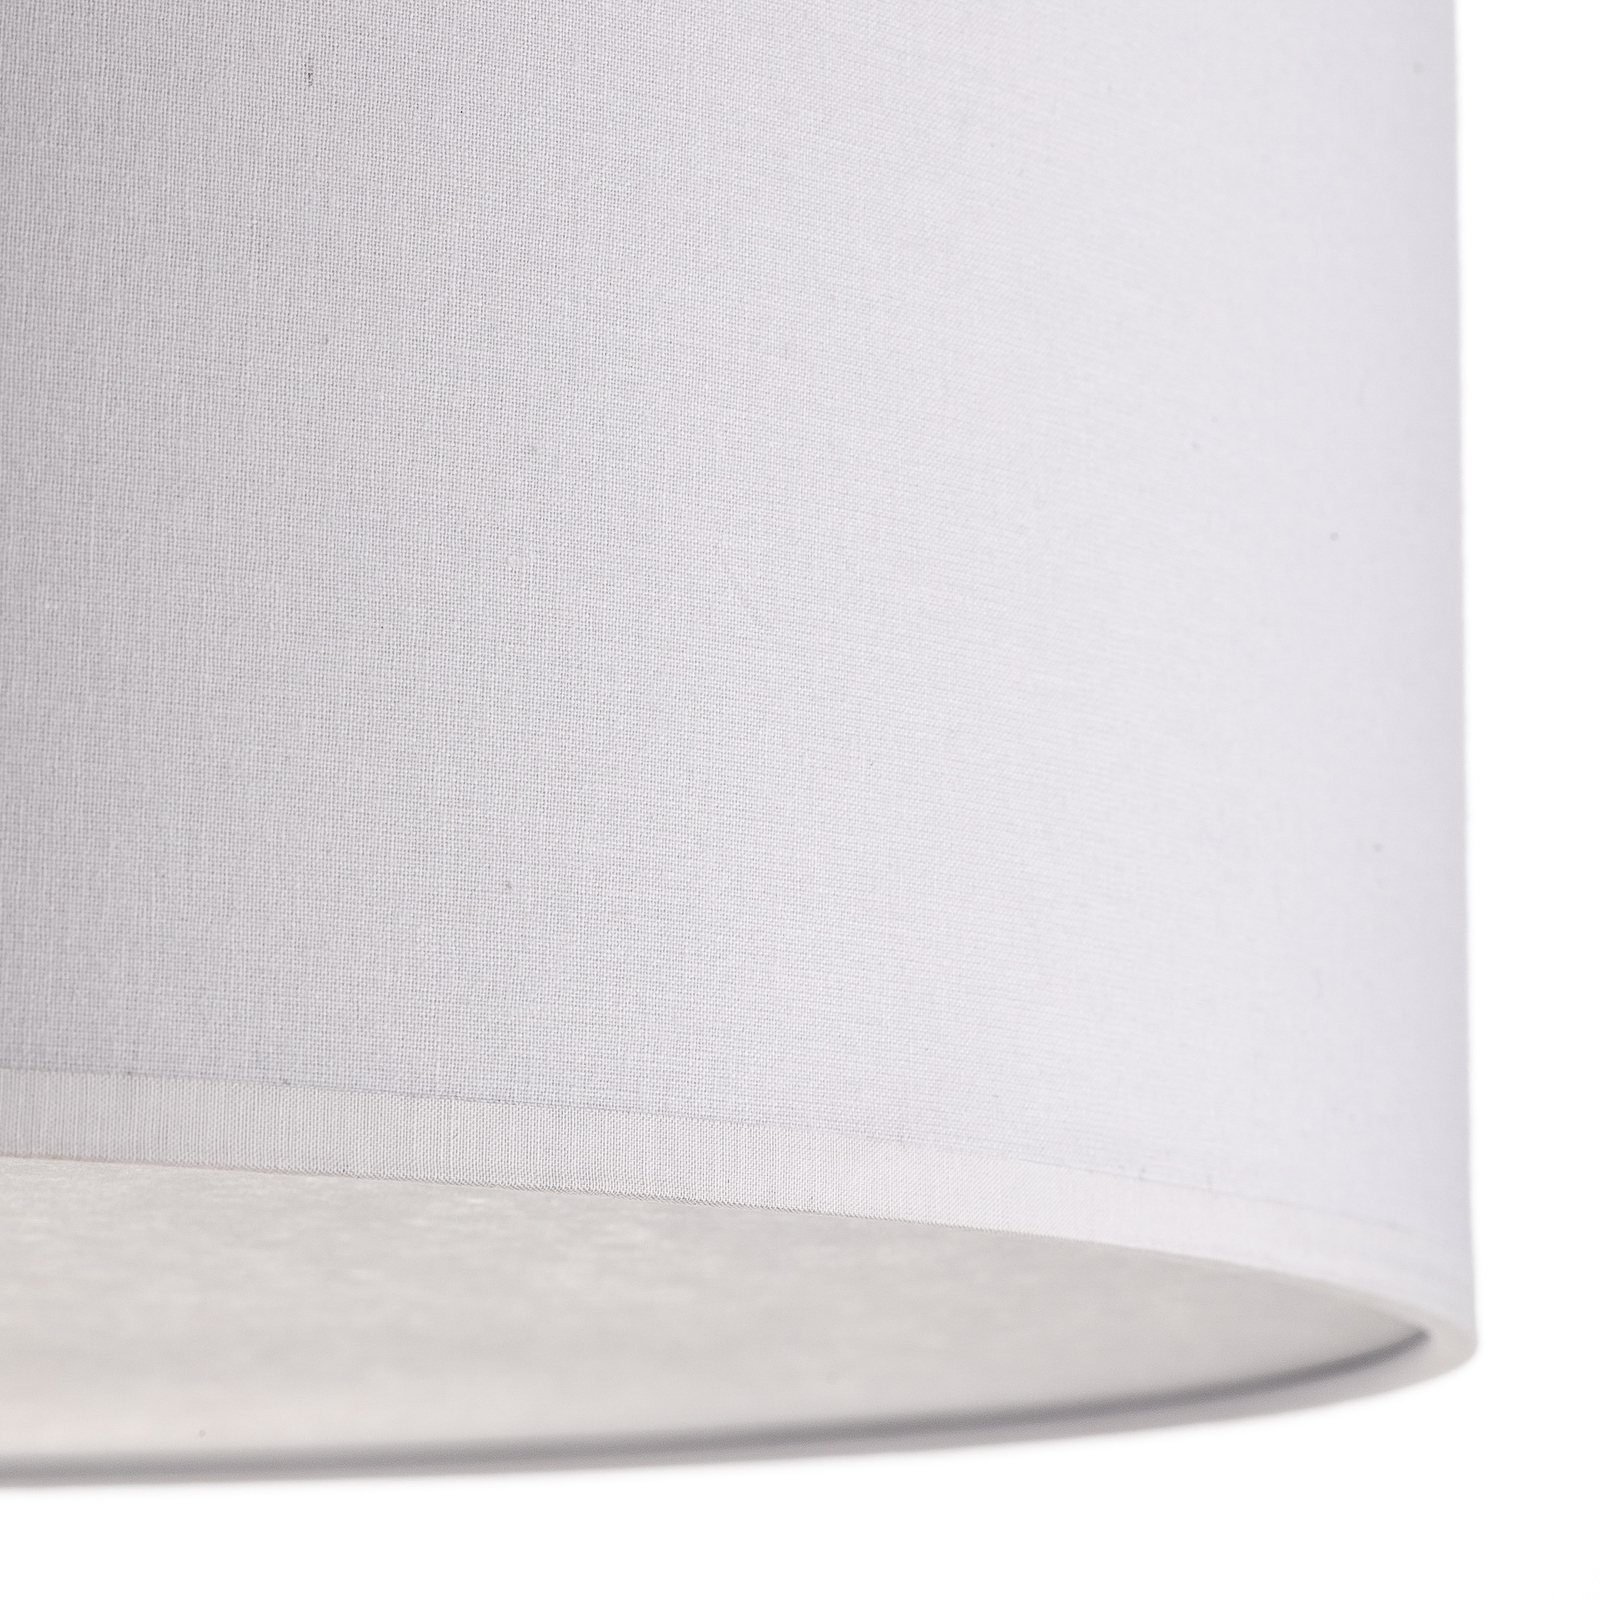 Rondo semi-flush ceiling light, white Ø 60cm